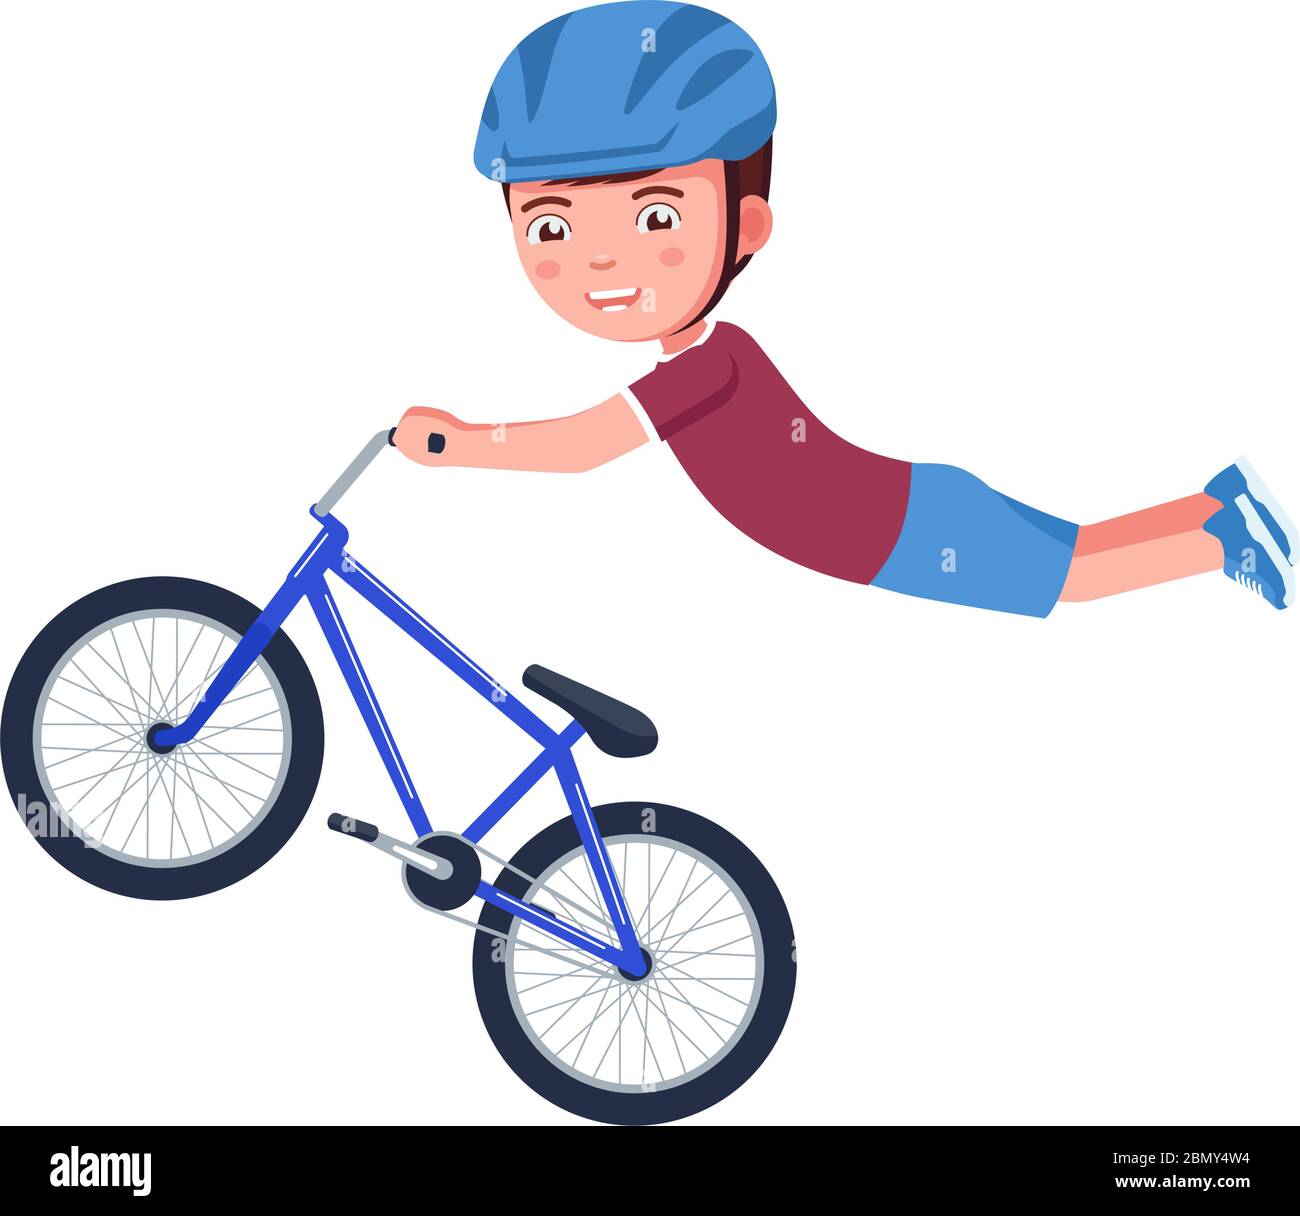 Boy realiza un acrobacias en el aire en una bicicleta bmx. Vector  ilustración caricatura personaje niño en una bicicleta hace un salto y  vuela. El muchacho en una bicicleta bmx hace un